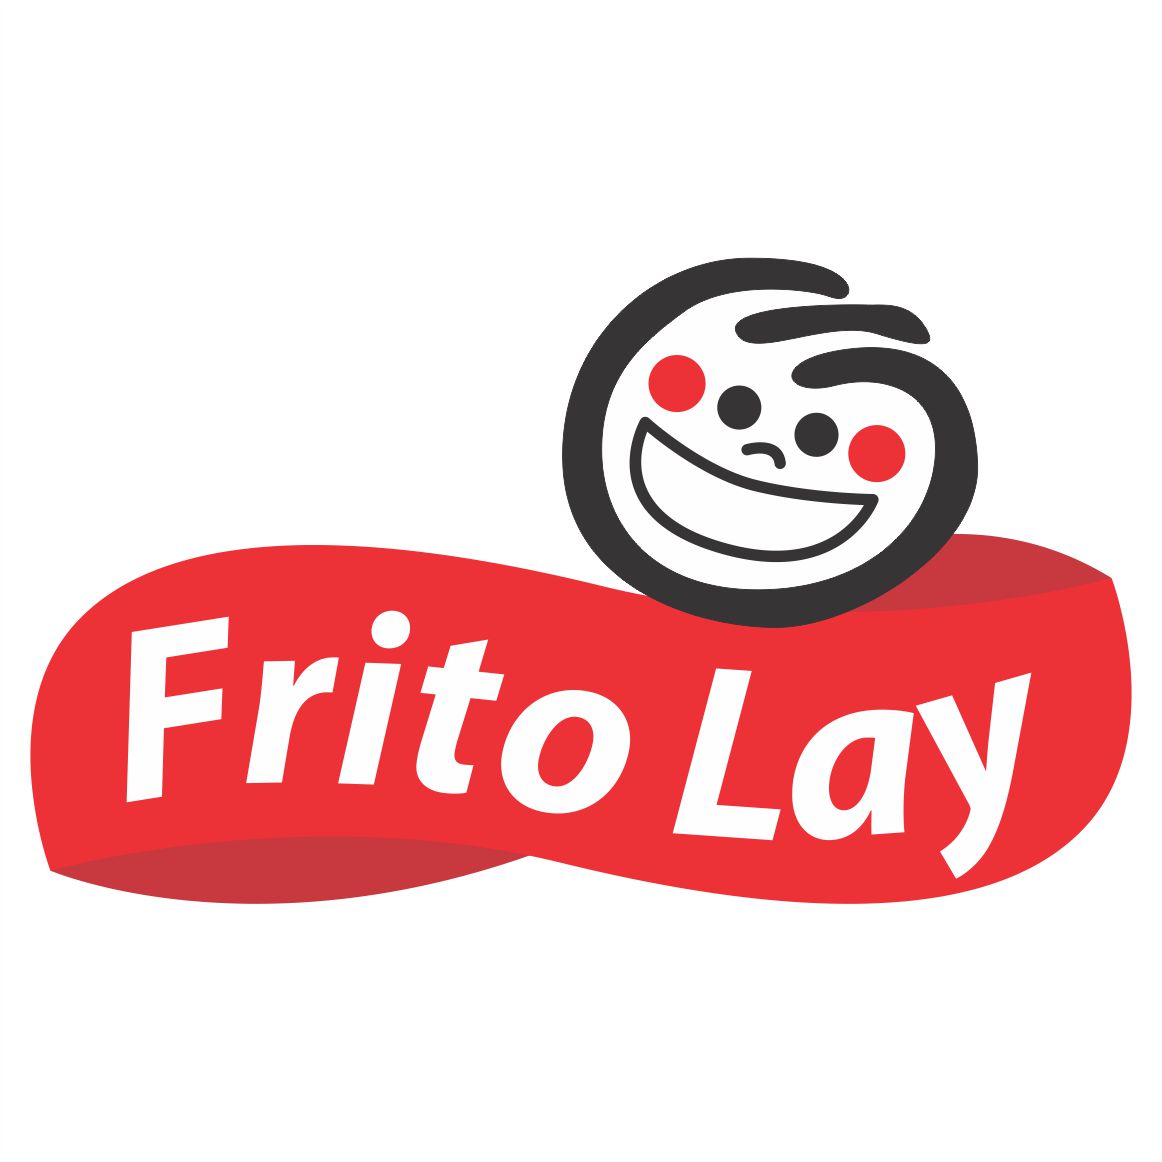 Descargar Logo Vectorizado frito lay Gratis